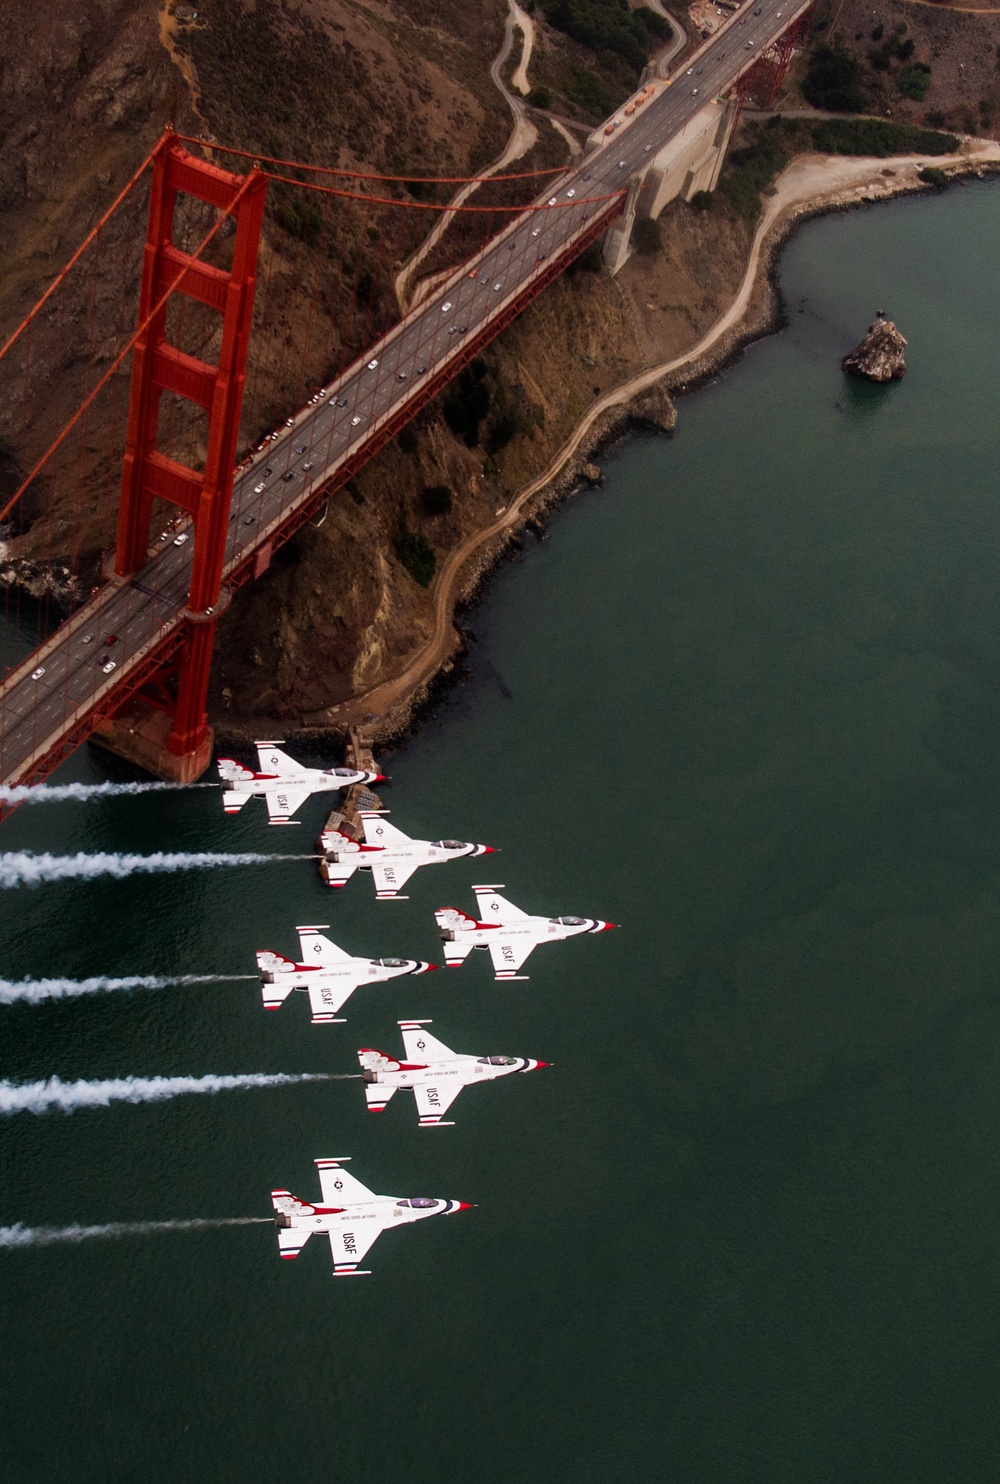 Thunderbirds fly over the Golden Gate Bridge